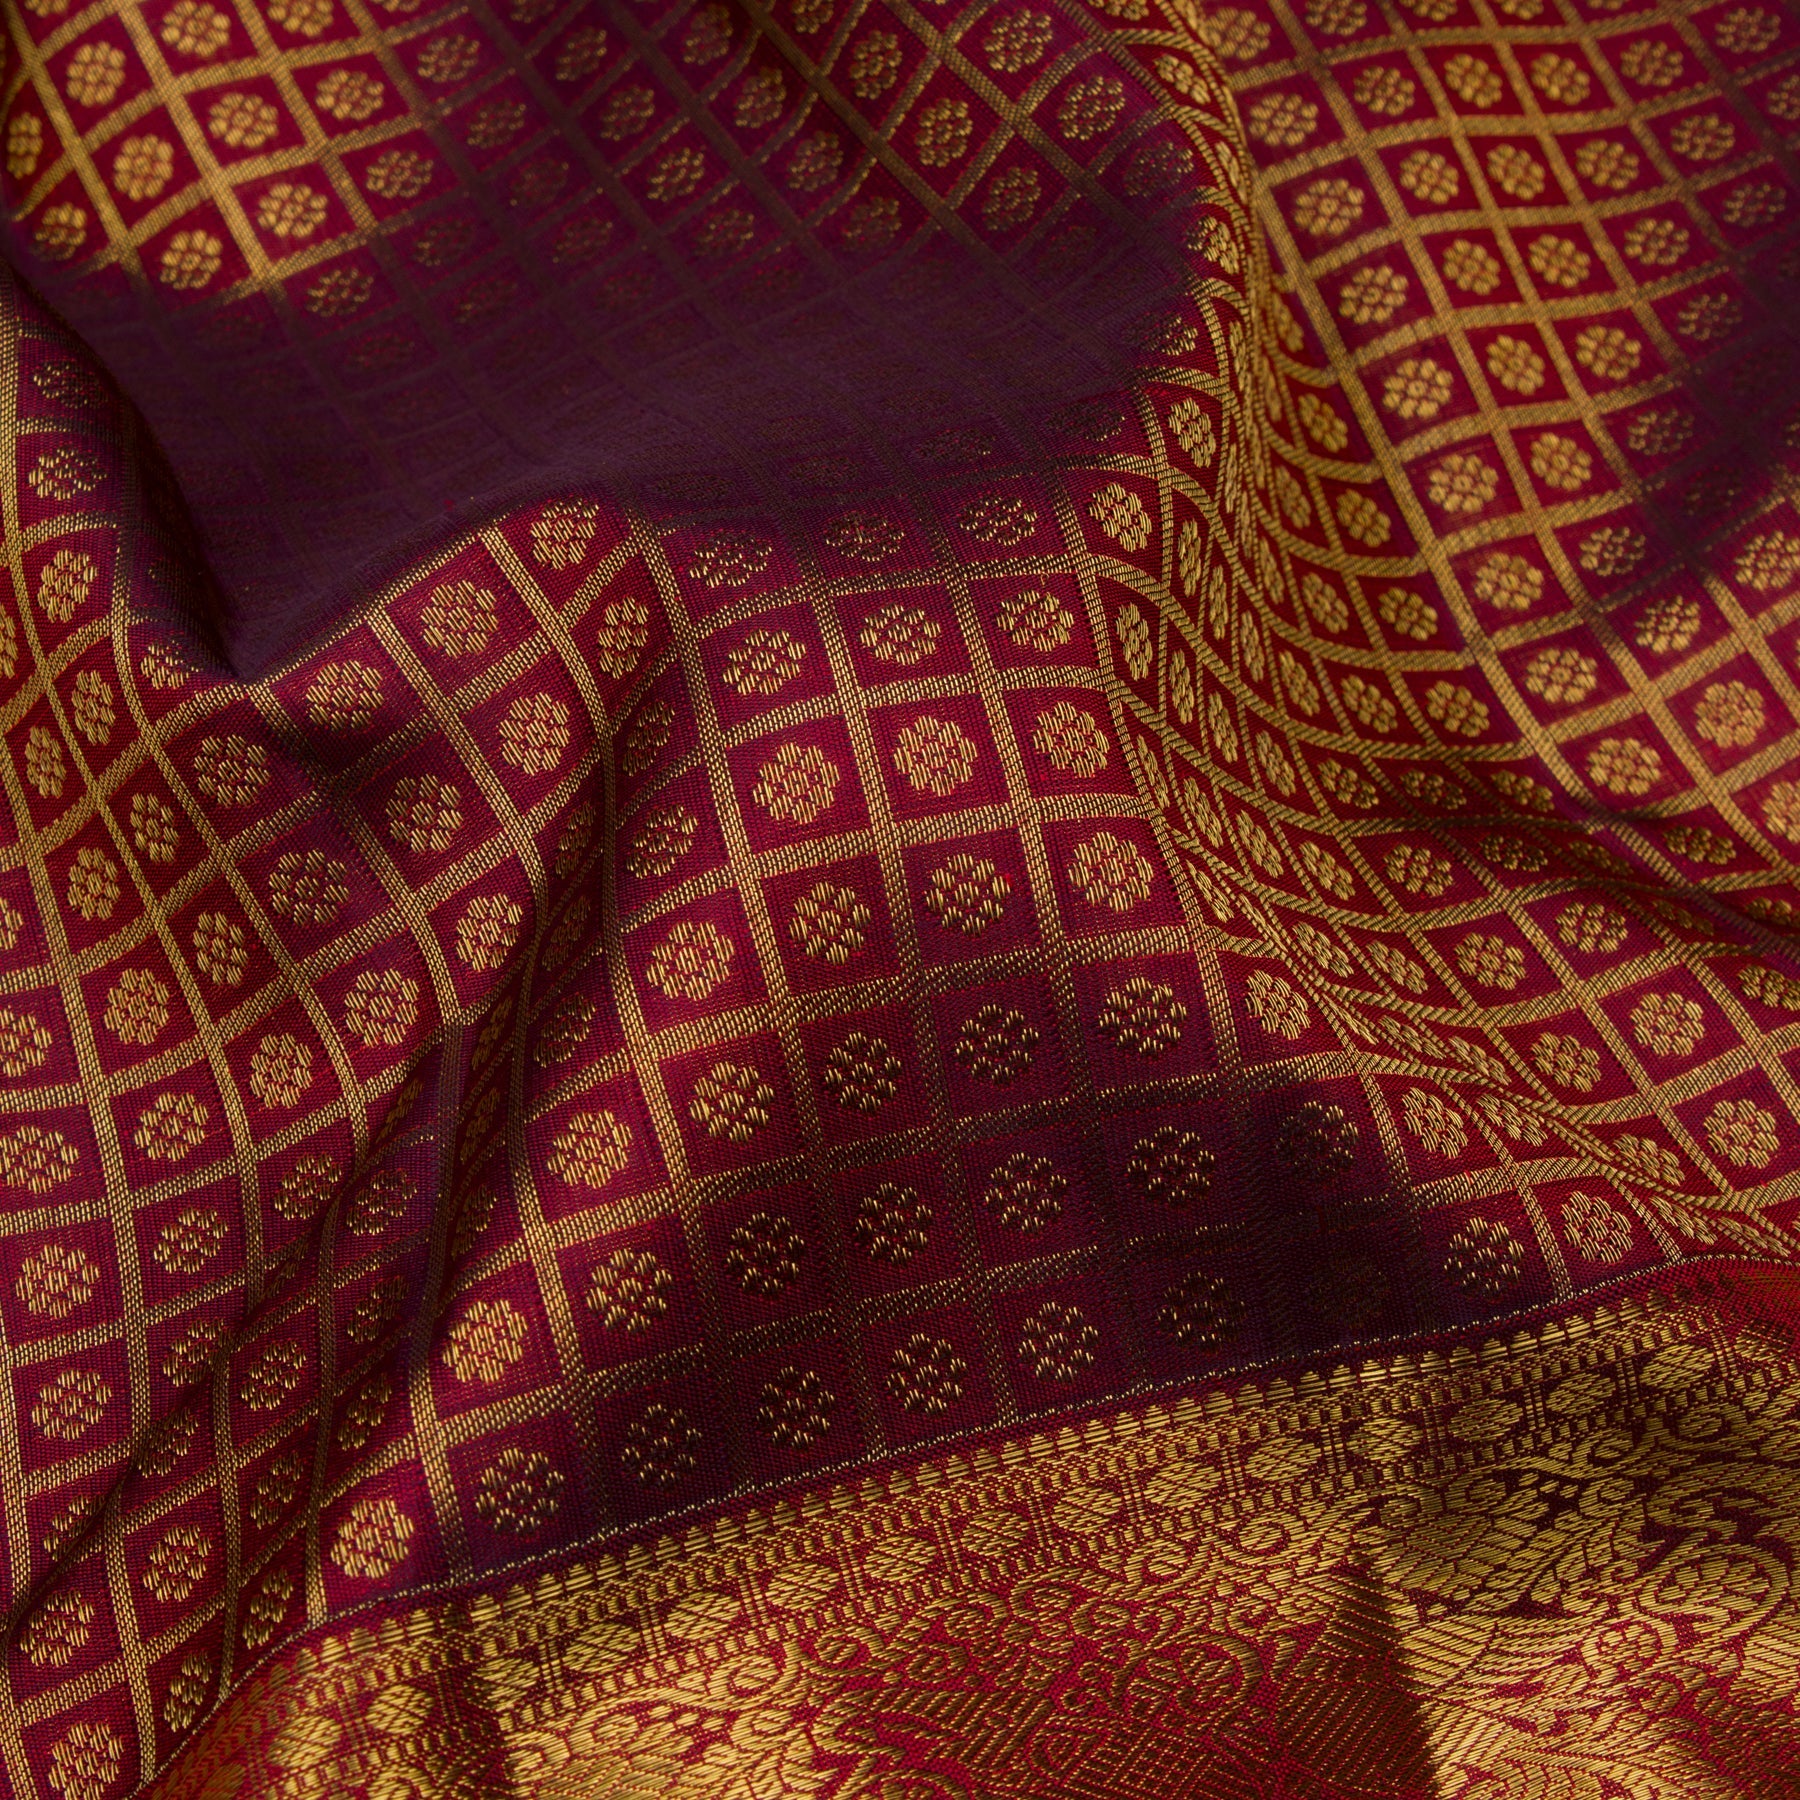 Kanakavalli Kanjivaram Silk Sari 23-110-HS001-02947 - Fabric View